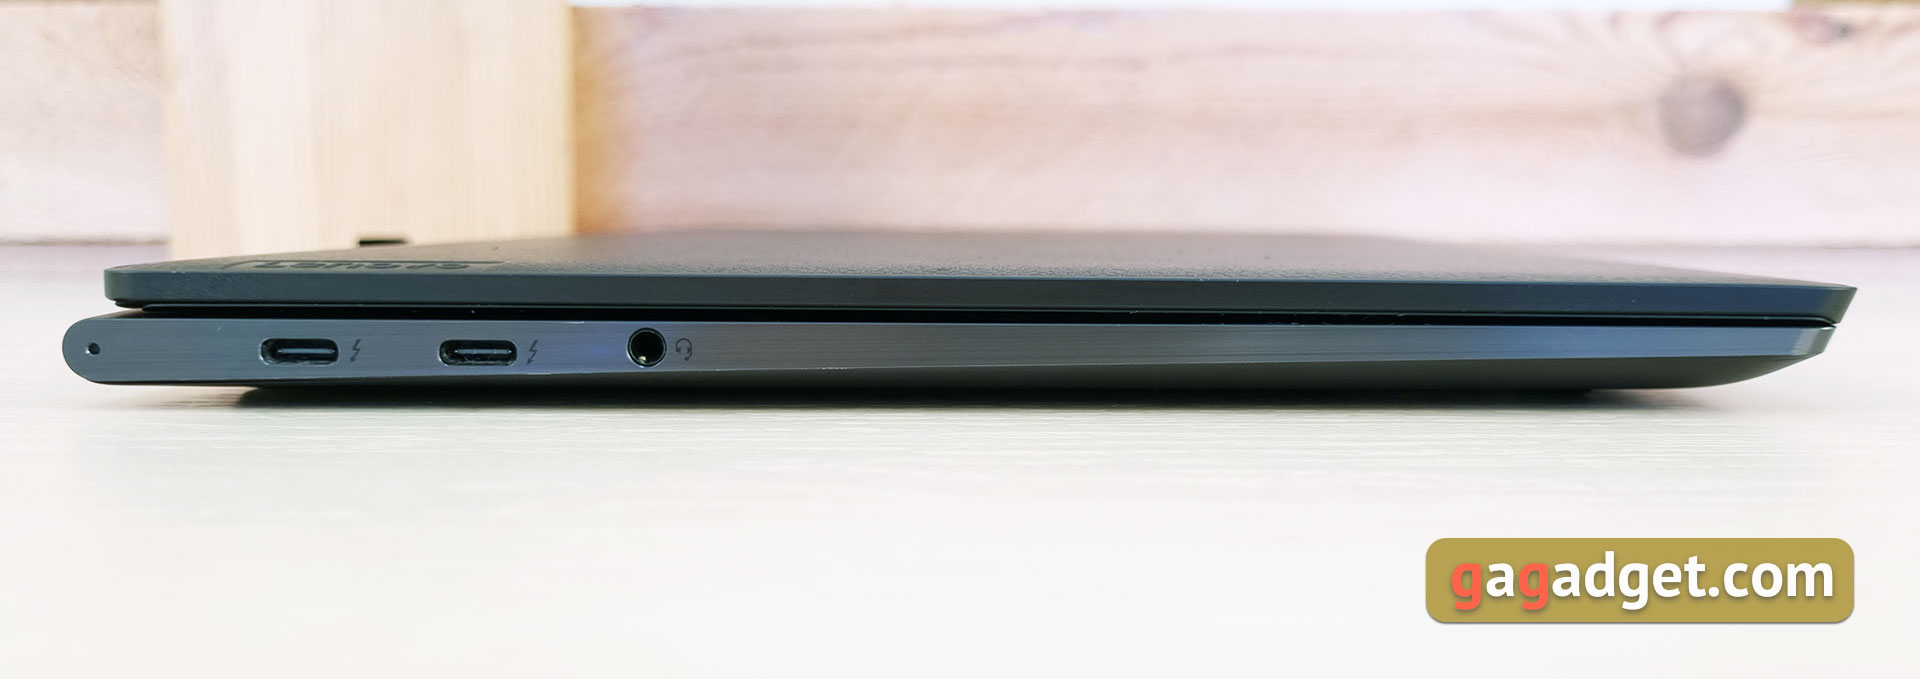 Lenovo Yoga Slim 9i Laptop Review-13